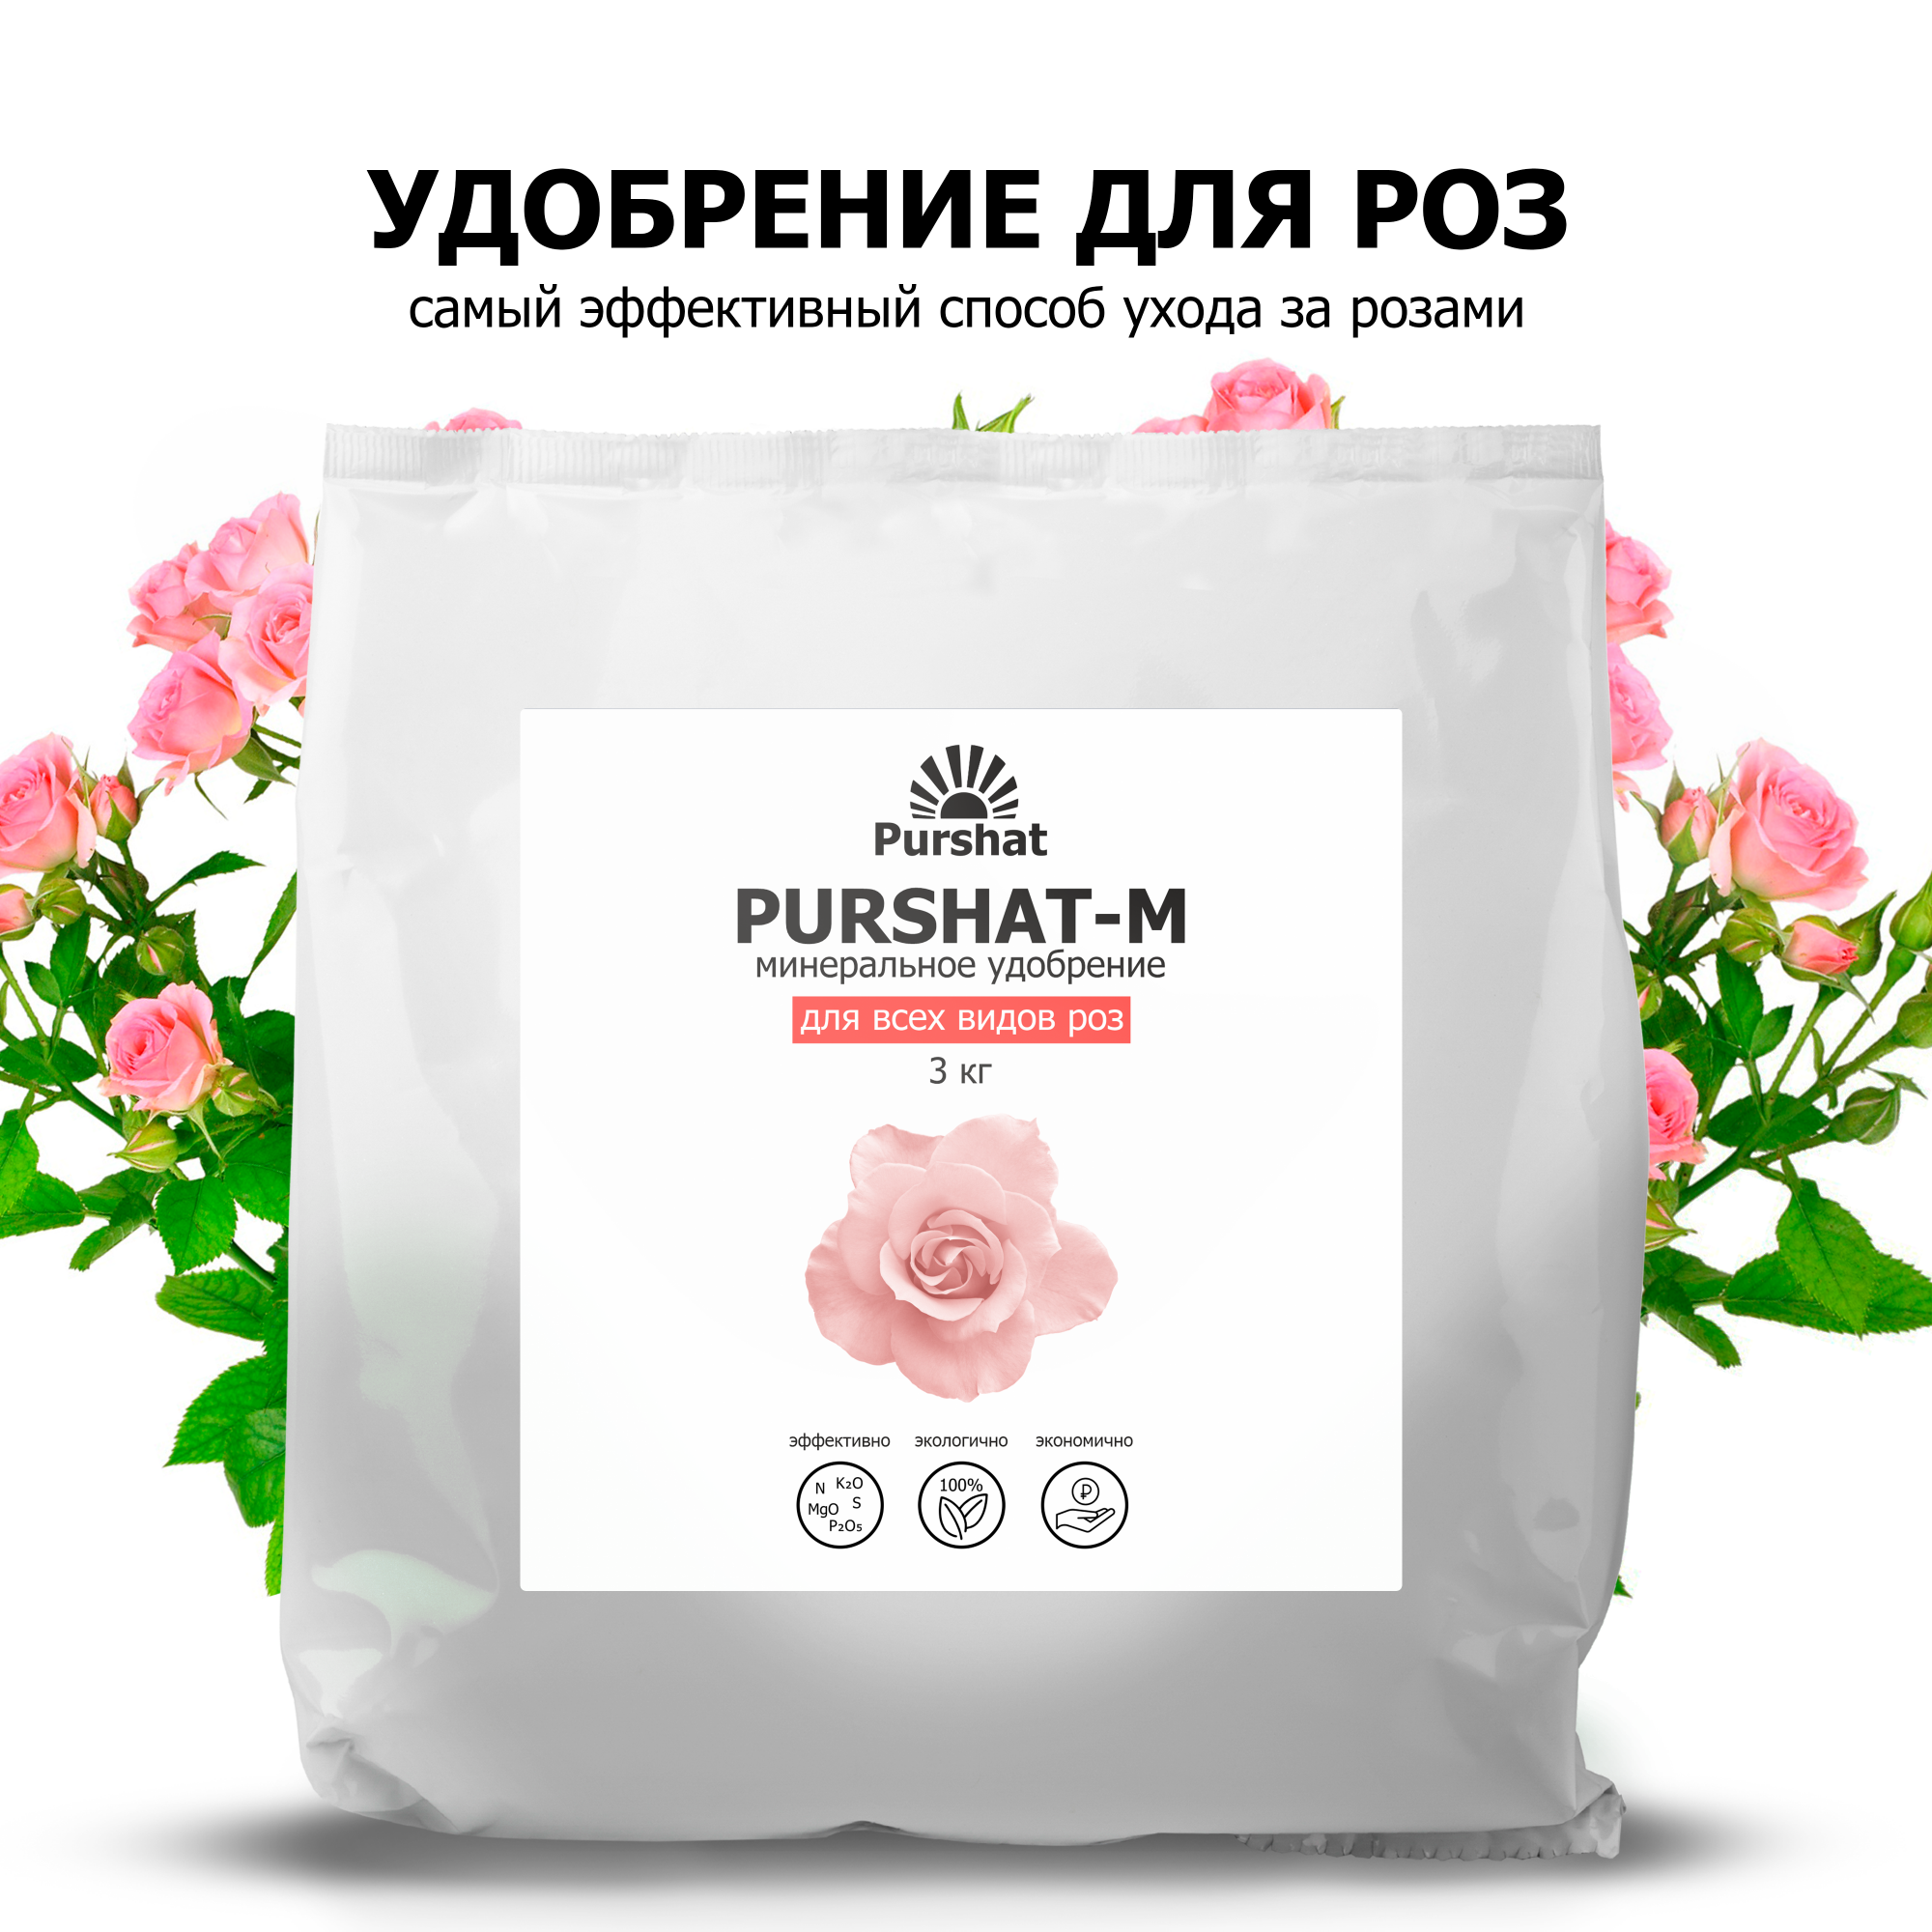 Удобрение для роз Пуршат-М 3 кг - купить в Москве, цены на Мегамаркет | 600009518442